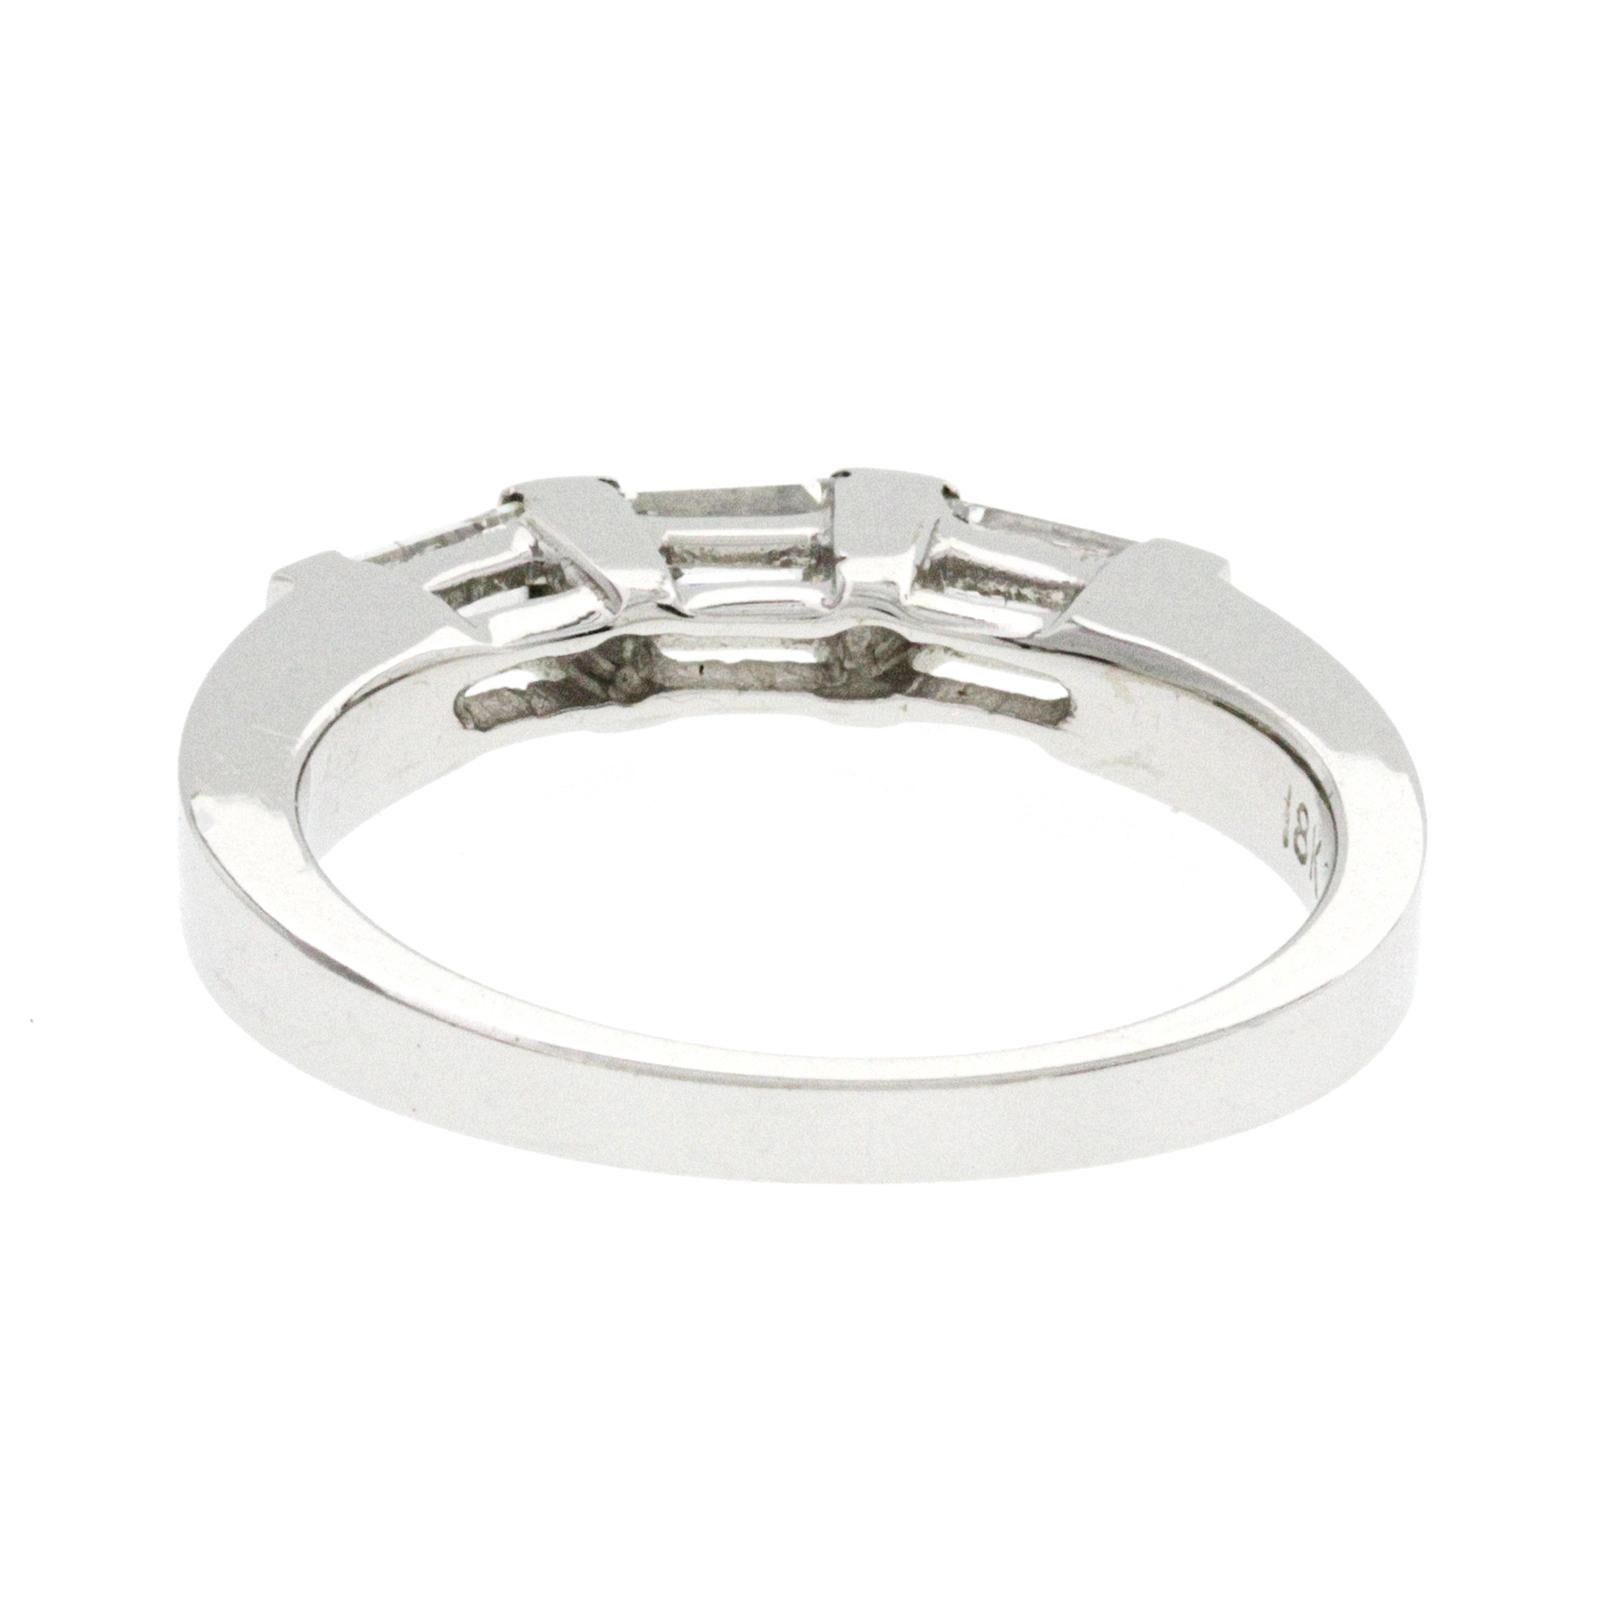 Women's 0.38 Carat Princess Cut Diamonds 18 Karat White Gold Wedding Band Ring For Sale